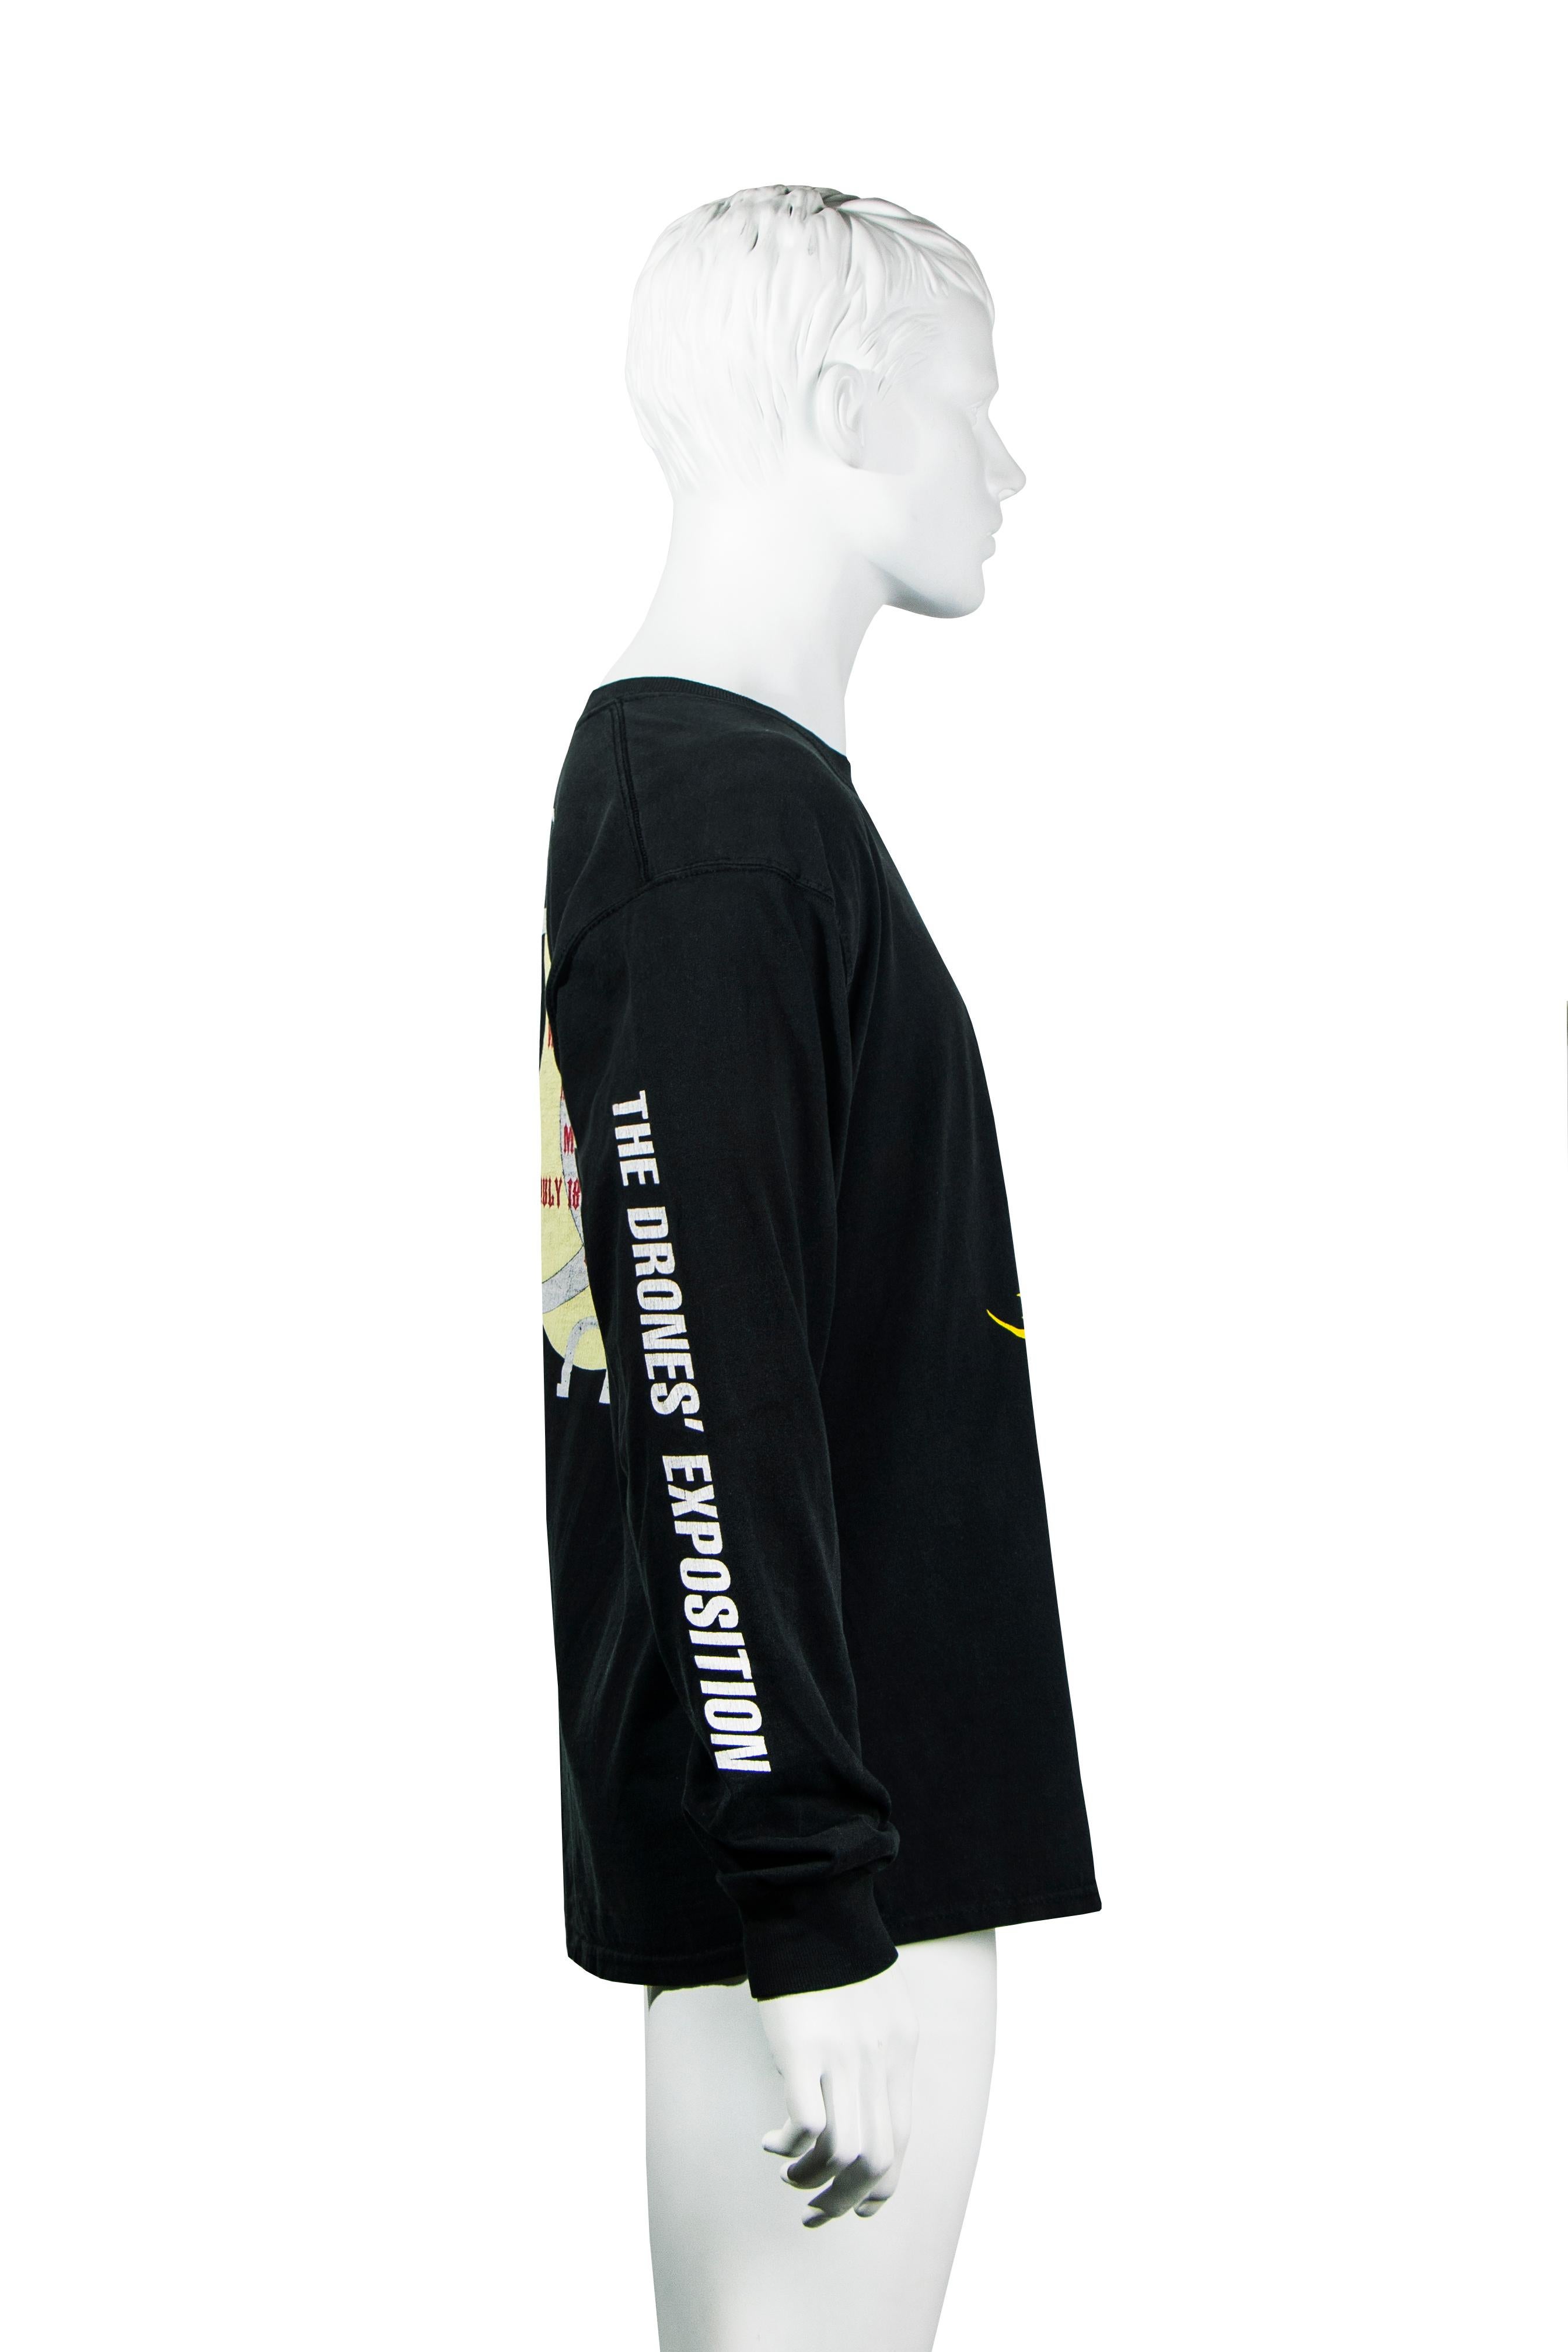 Matthew Barney 'Cremaster 2' long sleeve t-shirt, c. 1999 Walker Art Center For Sale 5